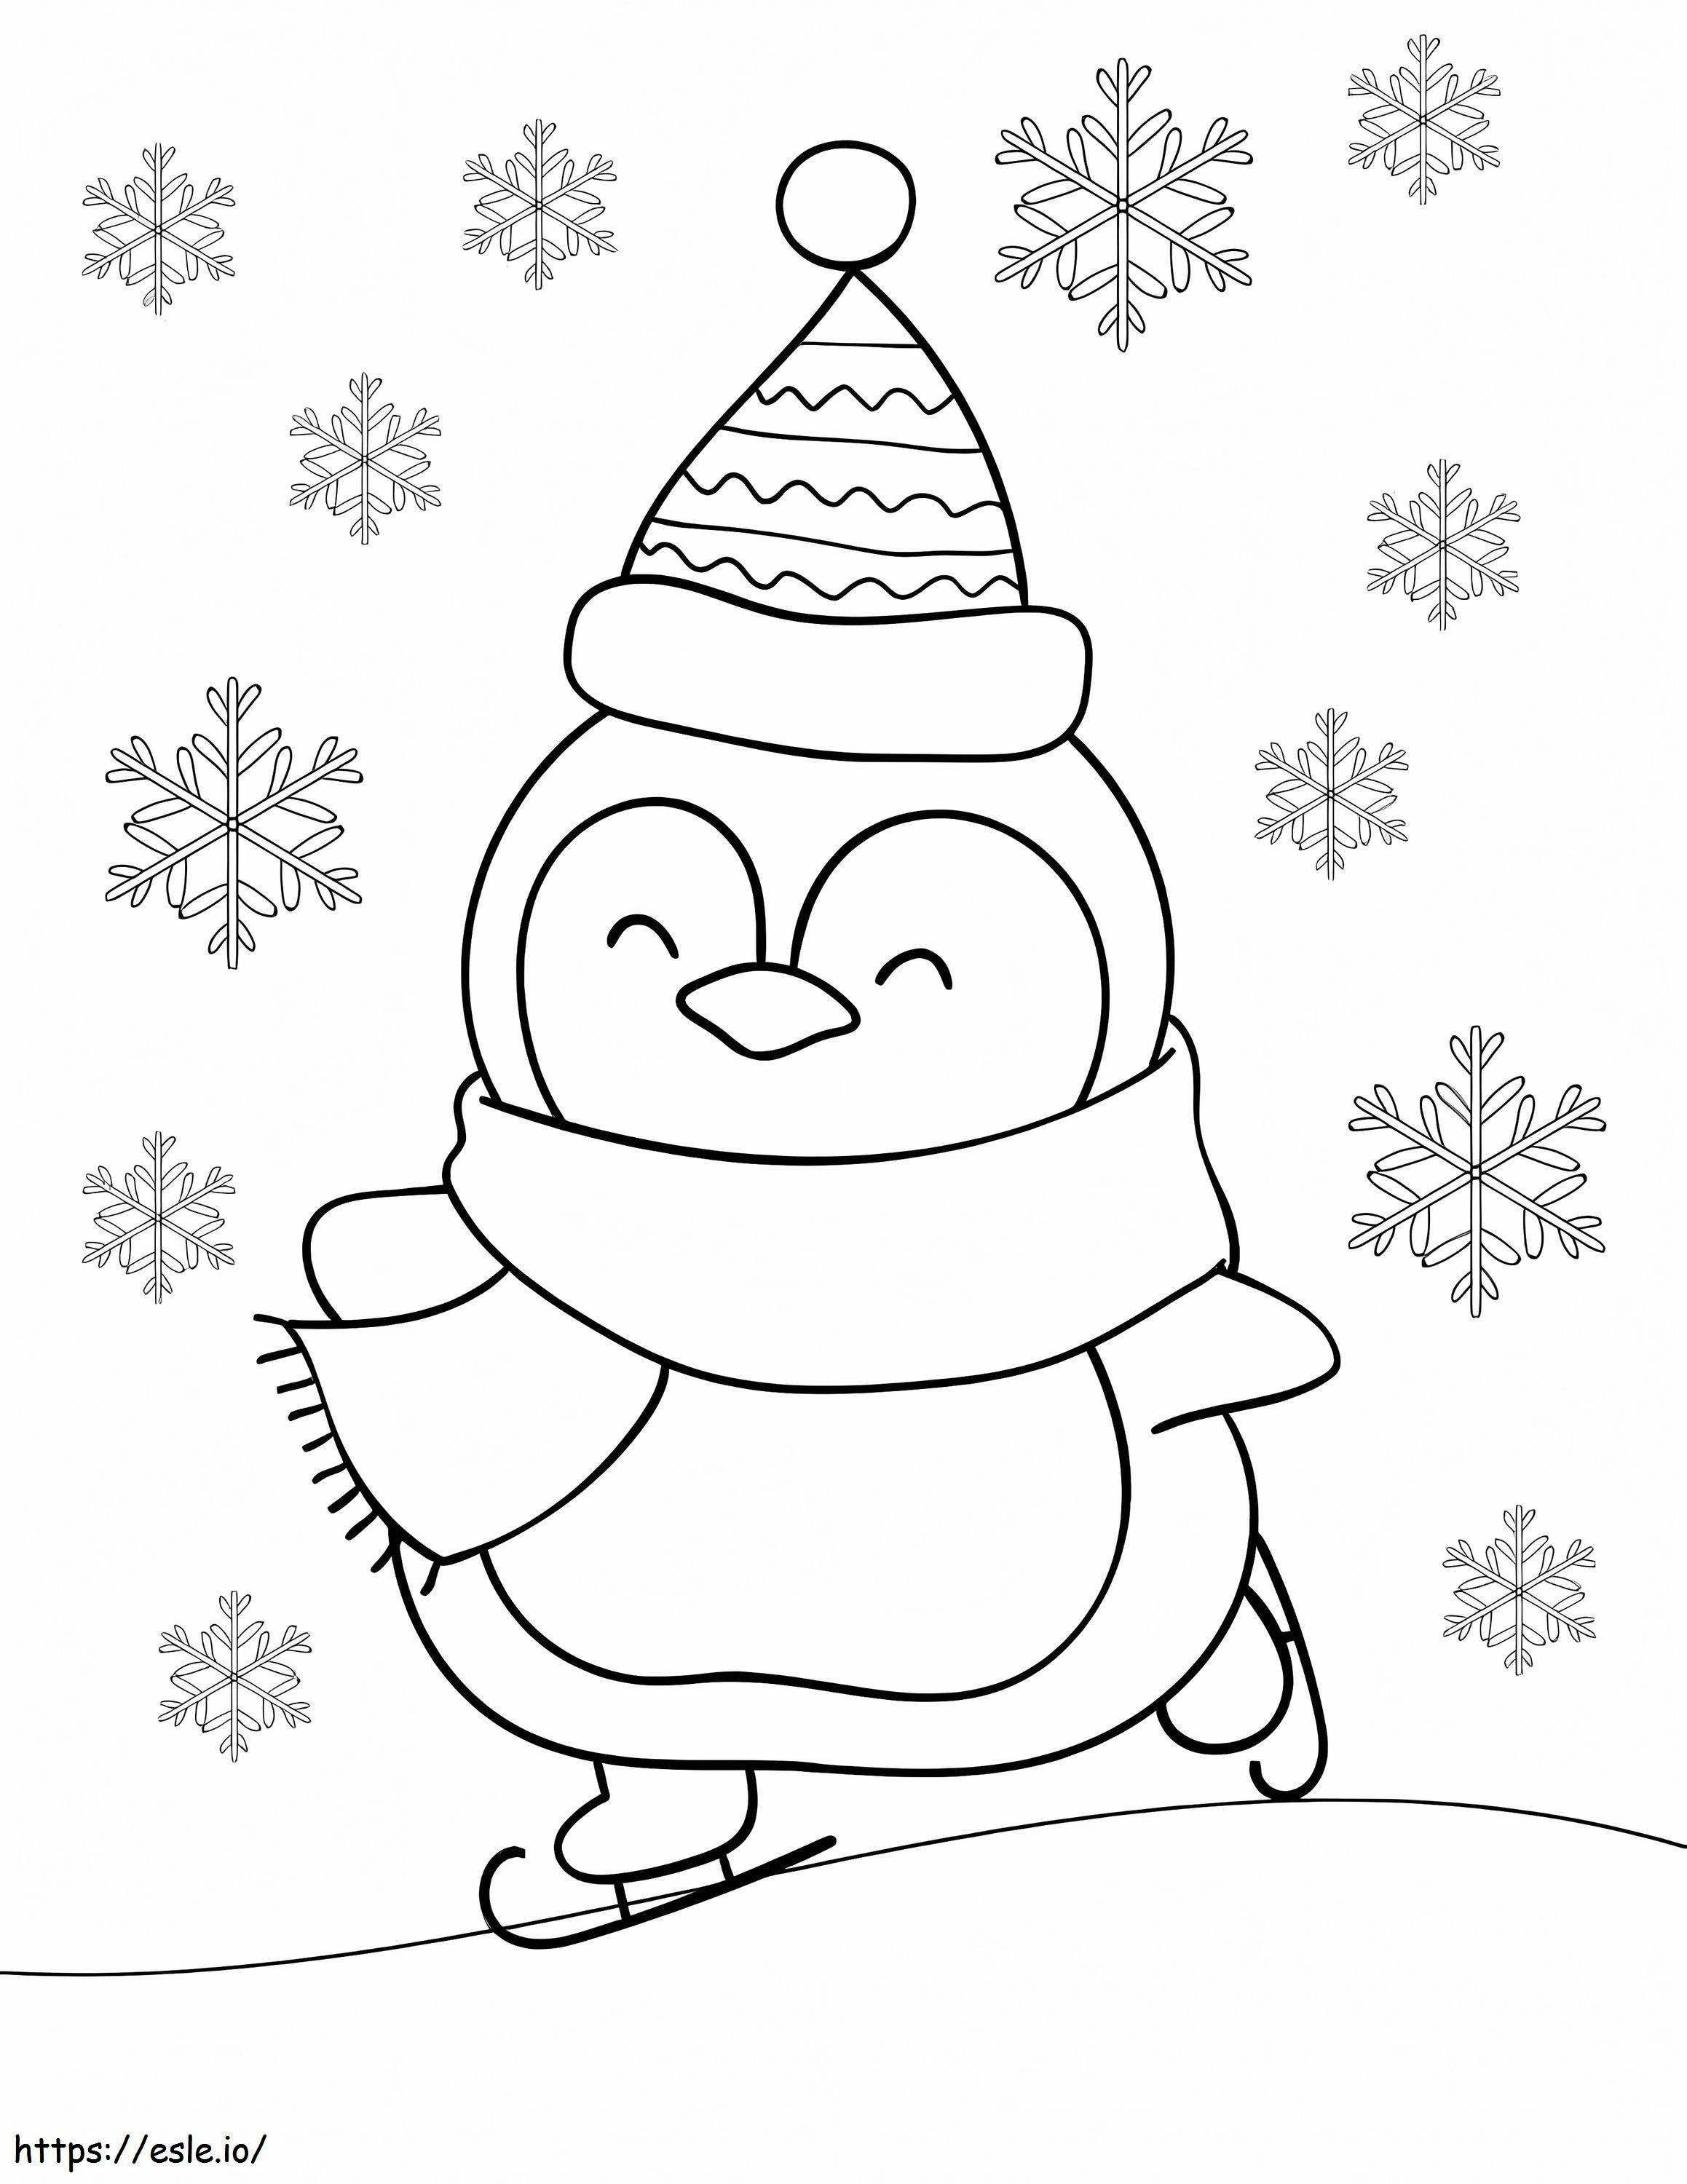 Pinguin fährt mit Schneeflocken ausmalbilder